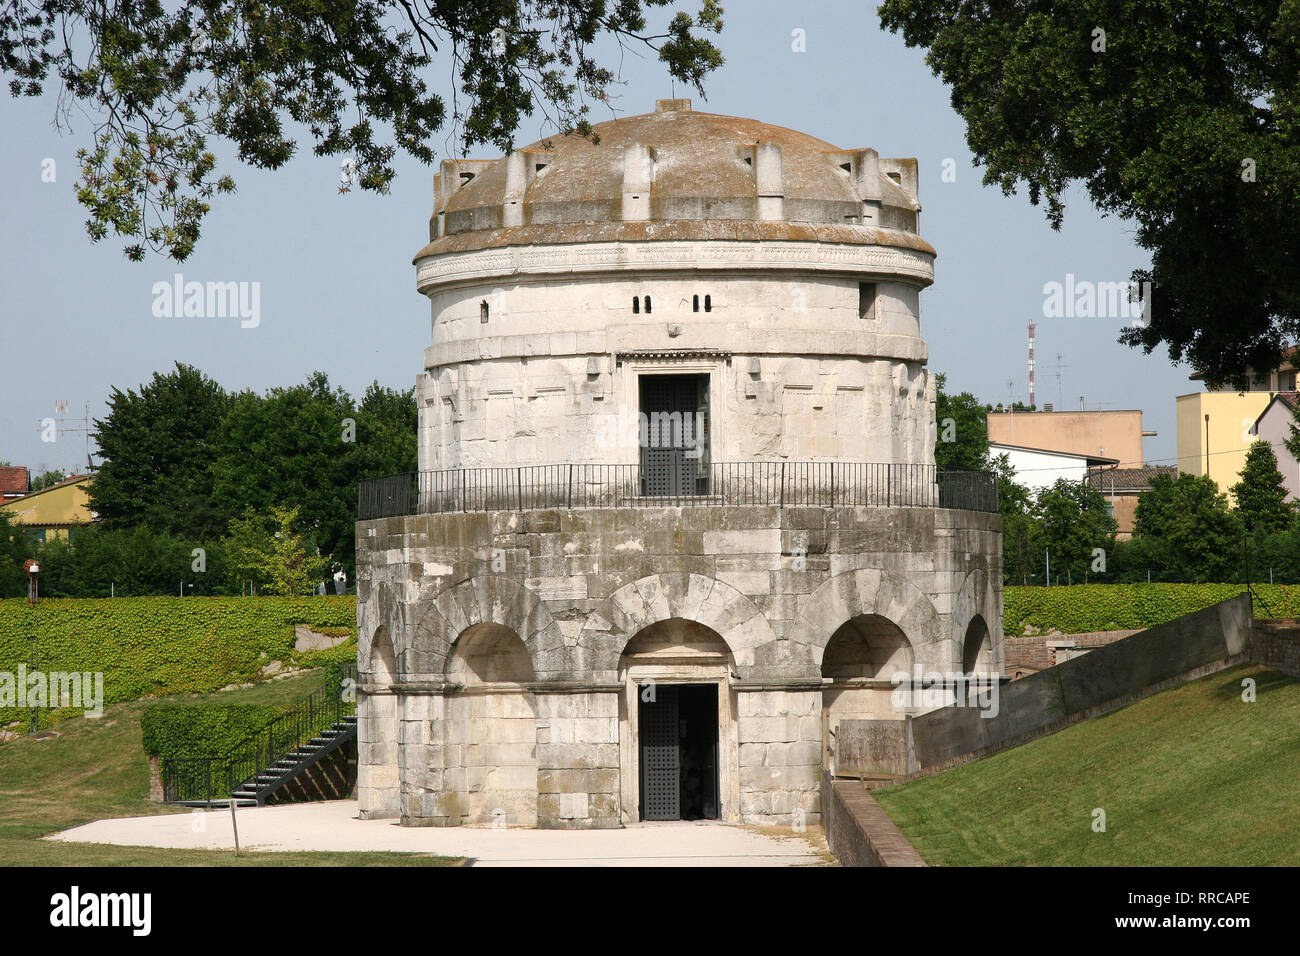 Italien. Ravenna. Mausoleum von Theoderic, König der Ostgoten. In 520 AD gebaut. Emilia-Romagna. Stockfoto